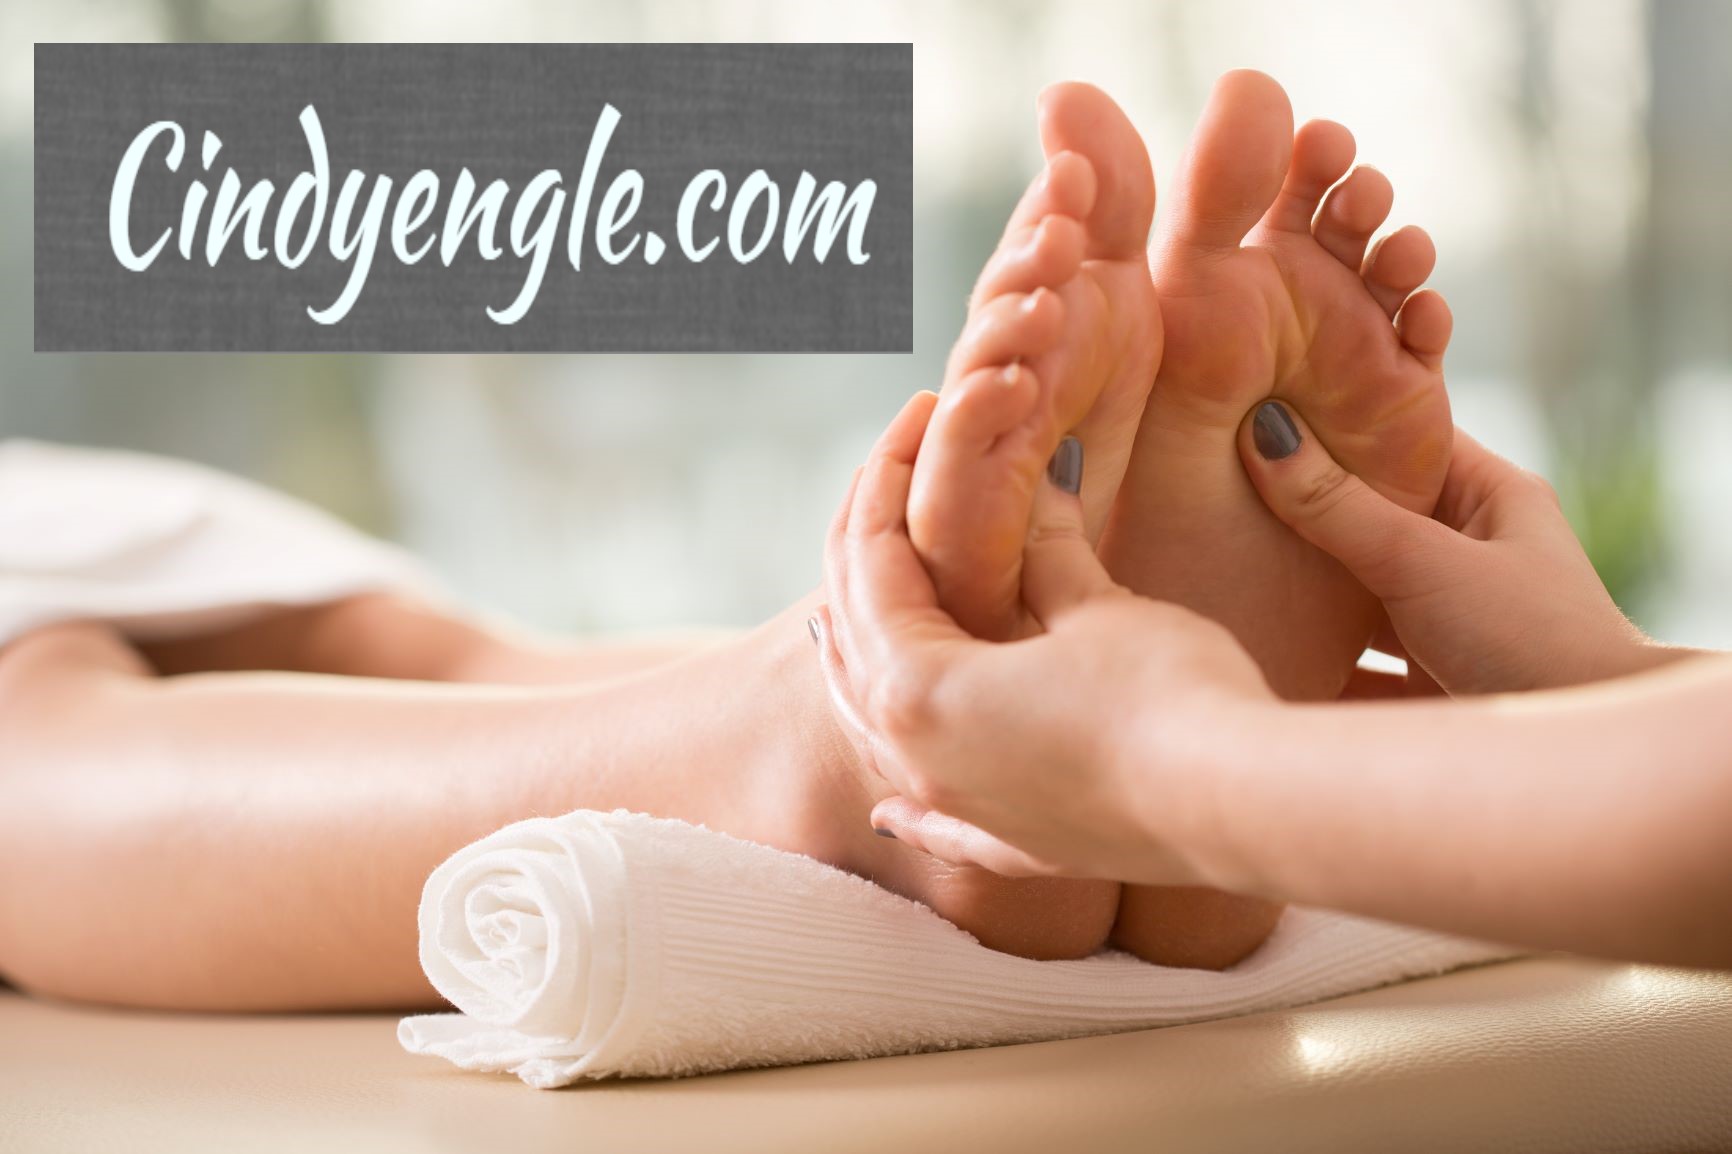 Cindyengle.com Massage